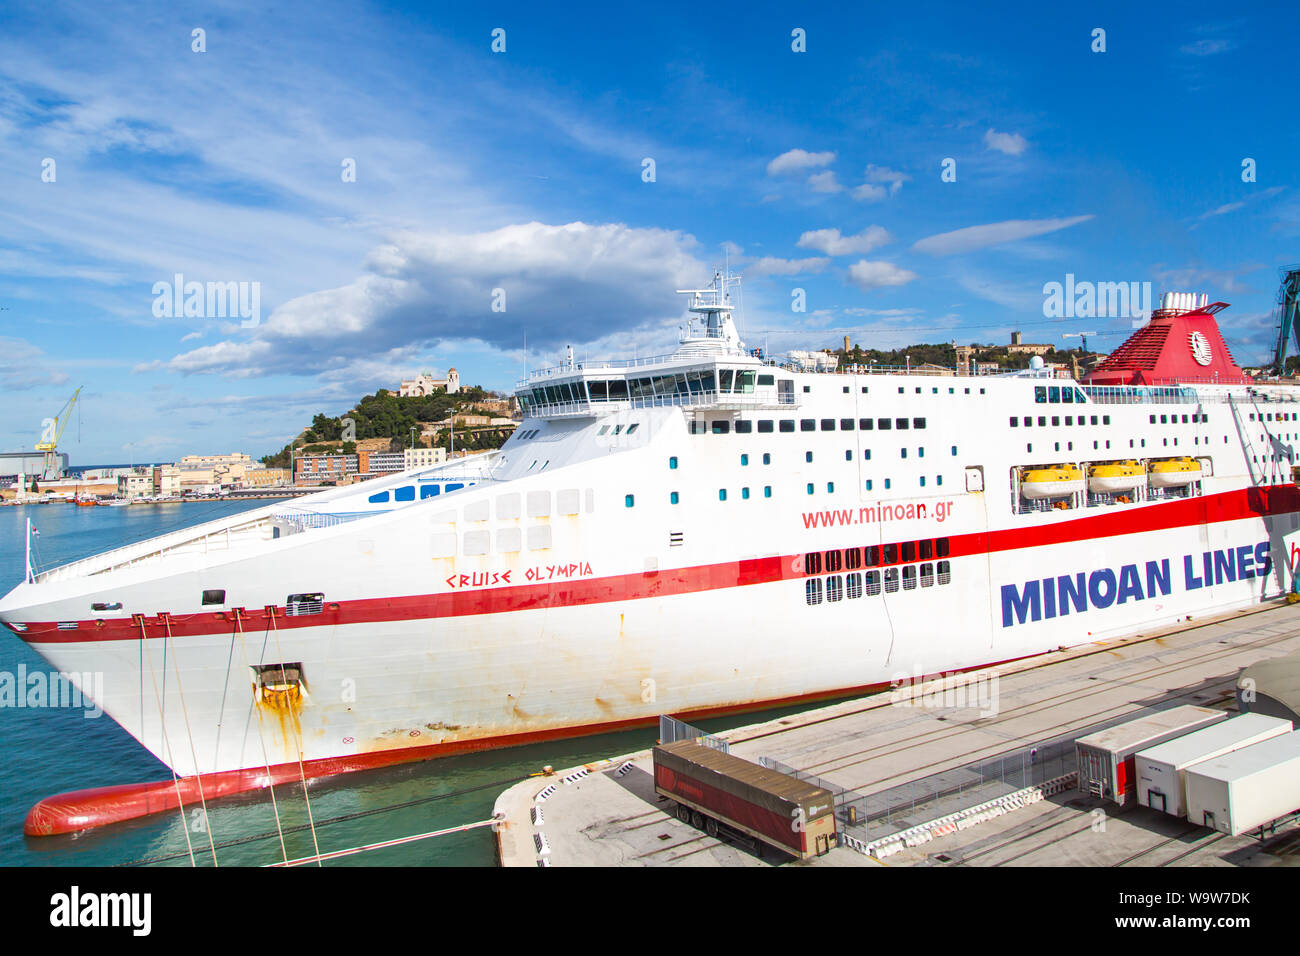 Ancona, Italy - November 18, 2014: Minoan lines ferry boat loaded at ...